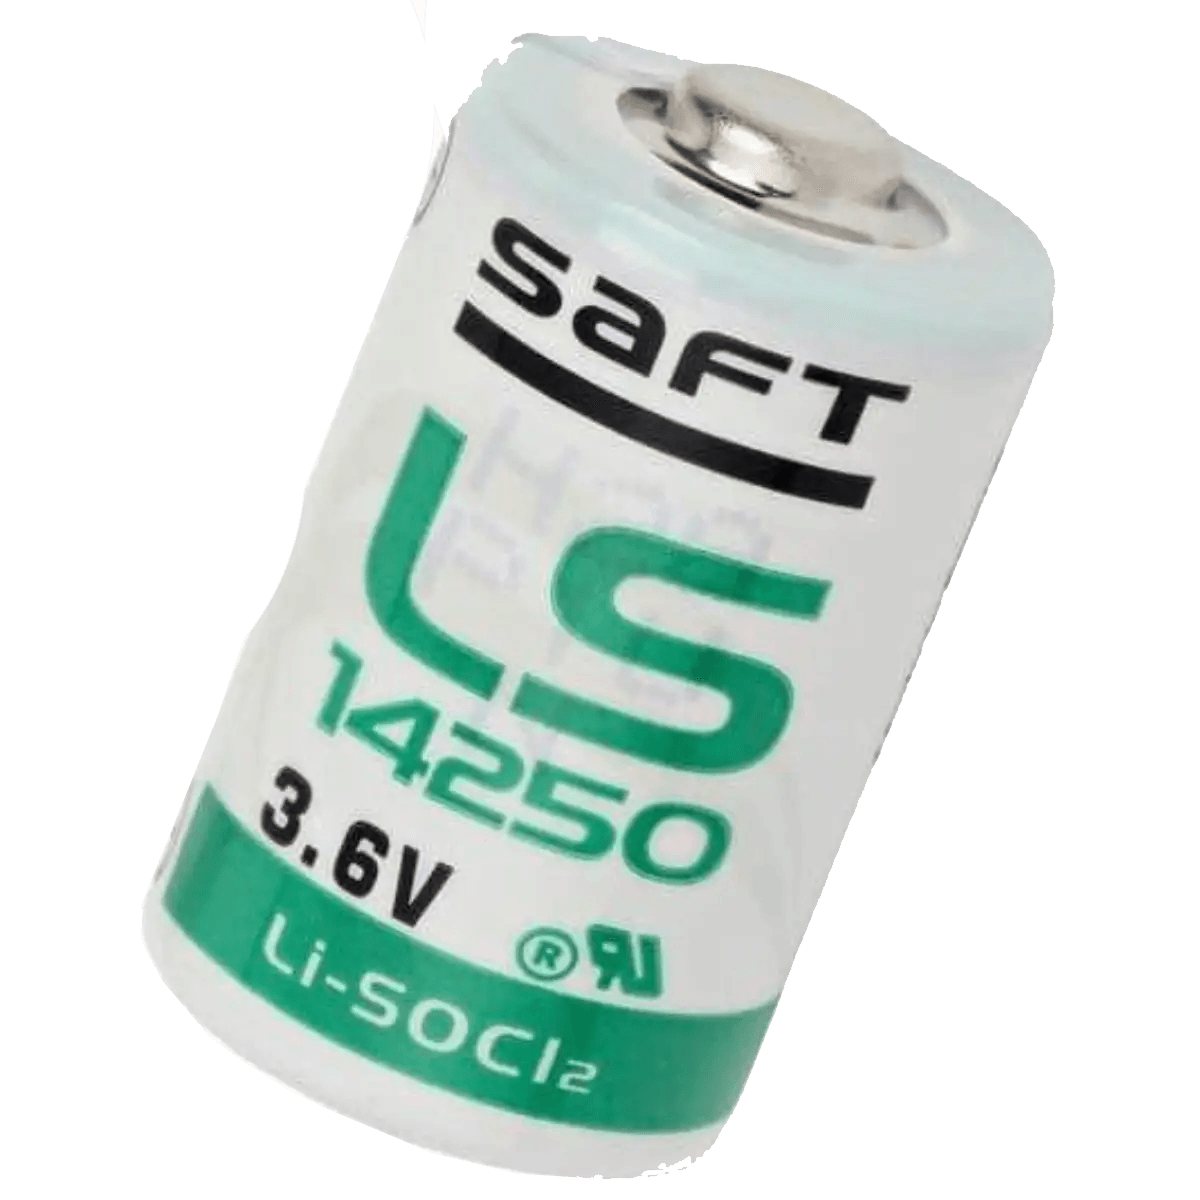 Pile Lithium LS14250 – 3.6V – 1.2Ah + Connecteur